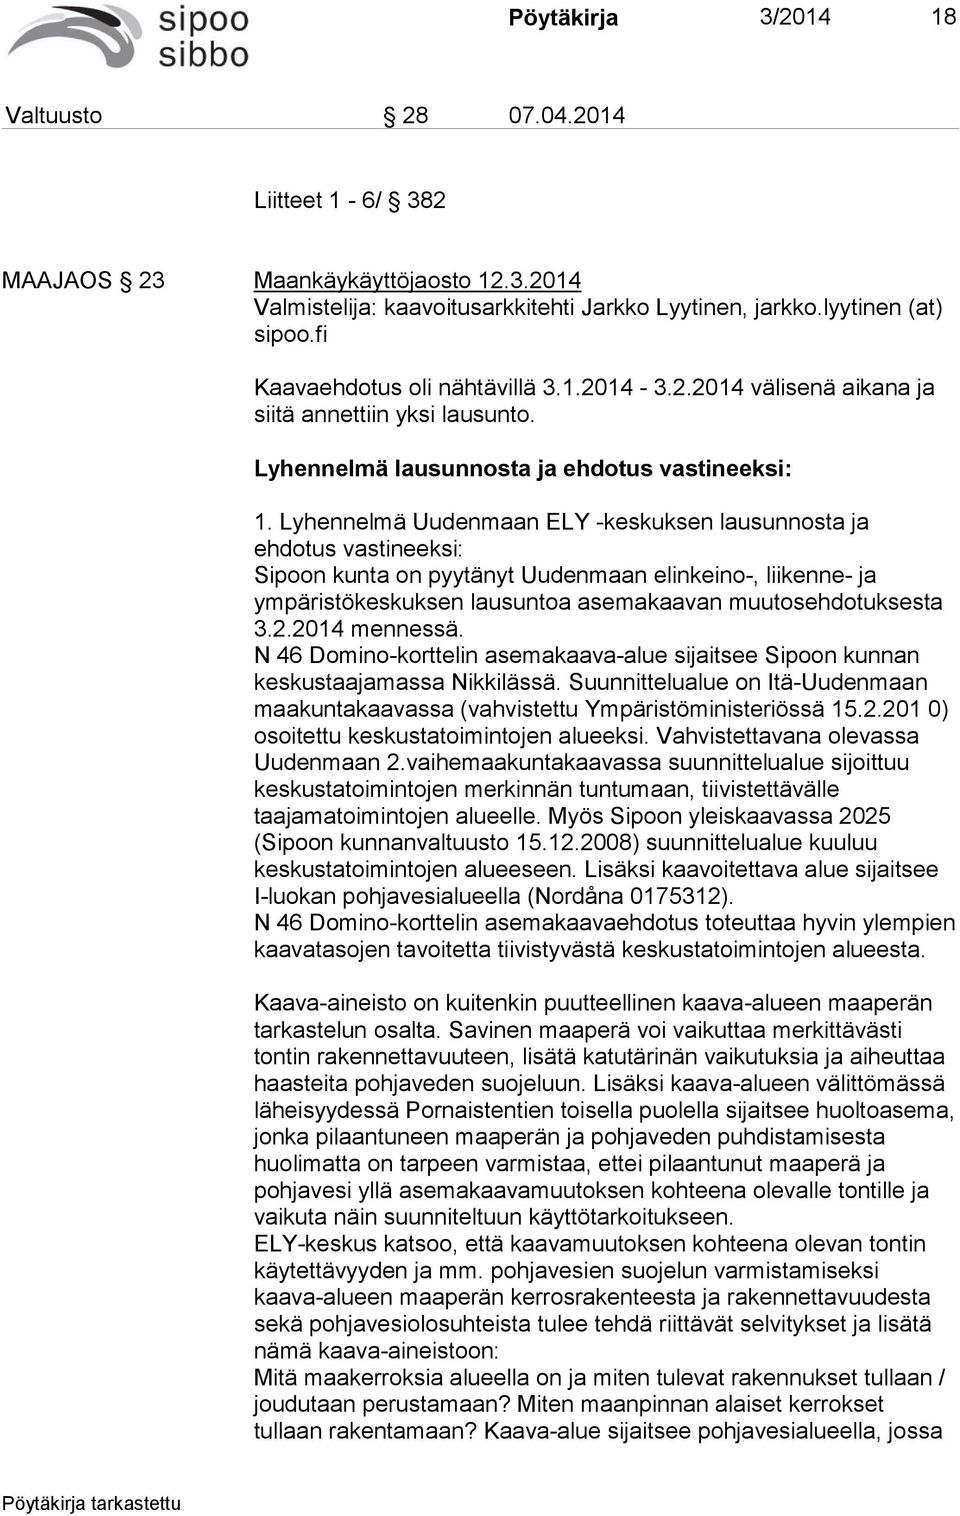 Lyhennelmä Uudenmaan ELY -keskuksen lausunnosta ja ehdotus vastineeksi: Sipoon kunta on pyytänyt Uudenmaan elinkeino-, liikenne- ja ympäristökeskuksen lausuntoa asemakaavan muutosehdotuksesta 3.2.